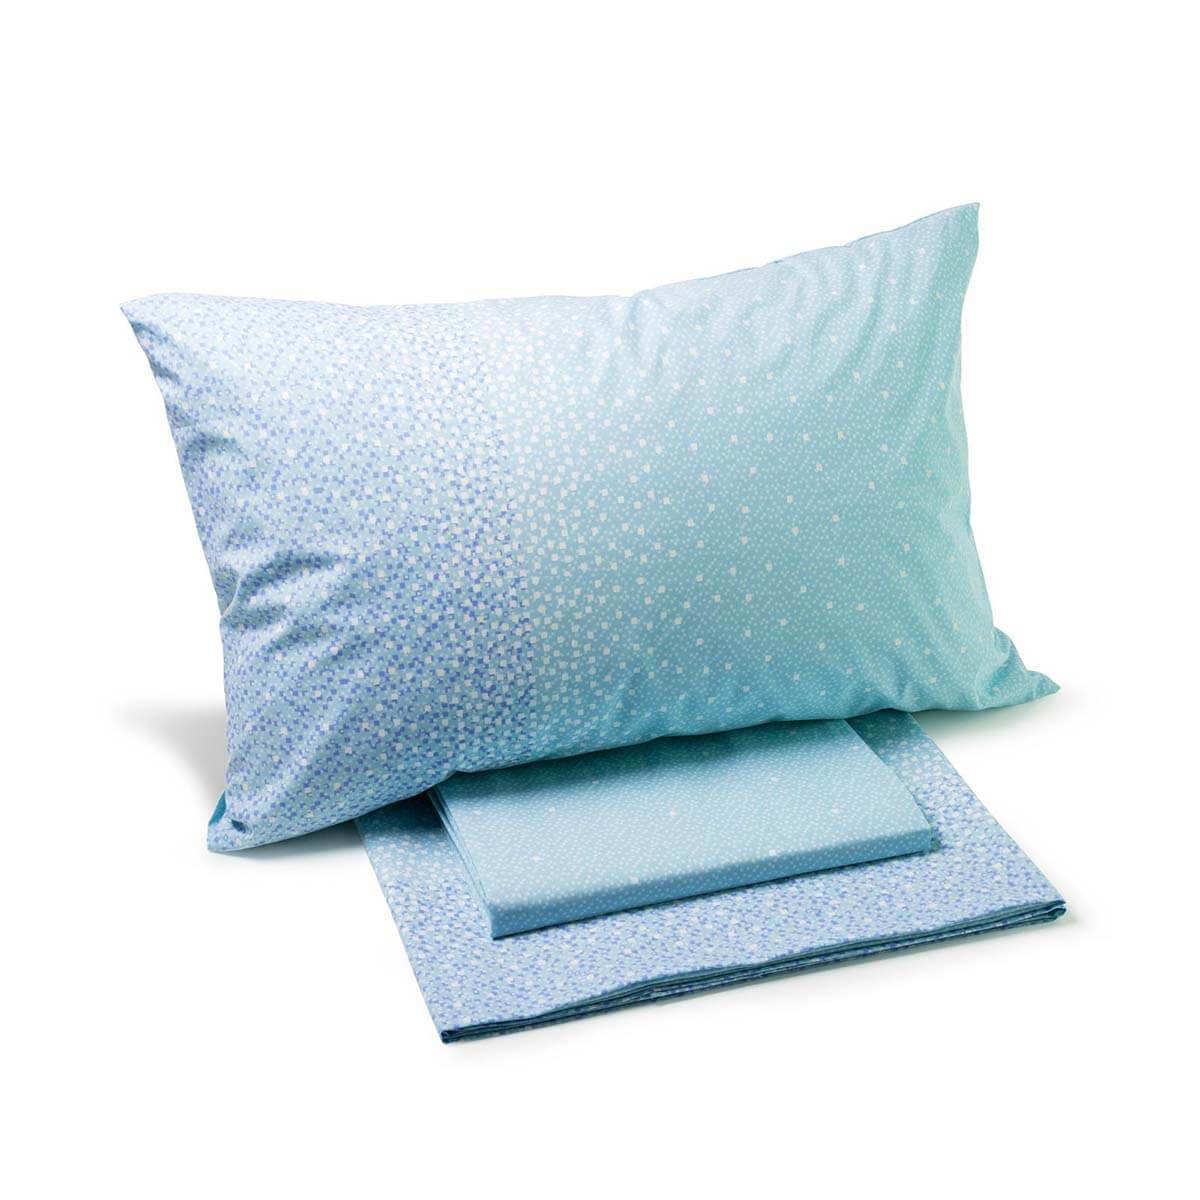 Completo lenzuola Caleffi Quadretti in puro cotone per letto singolo e da una piazza e mezza. Fantasia moderna colore blu azzurro.